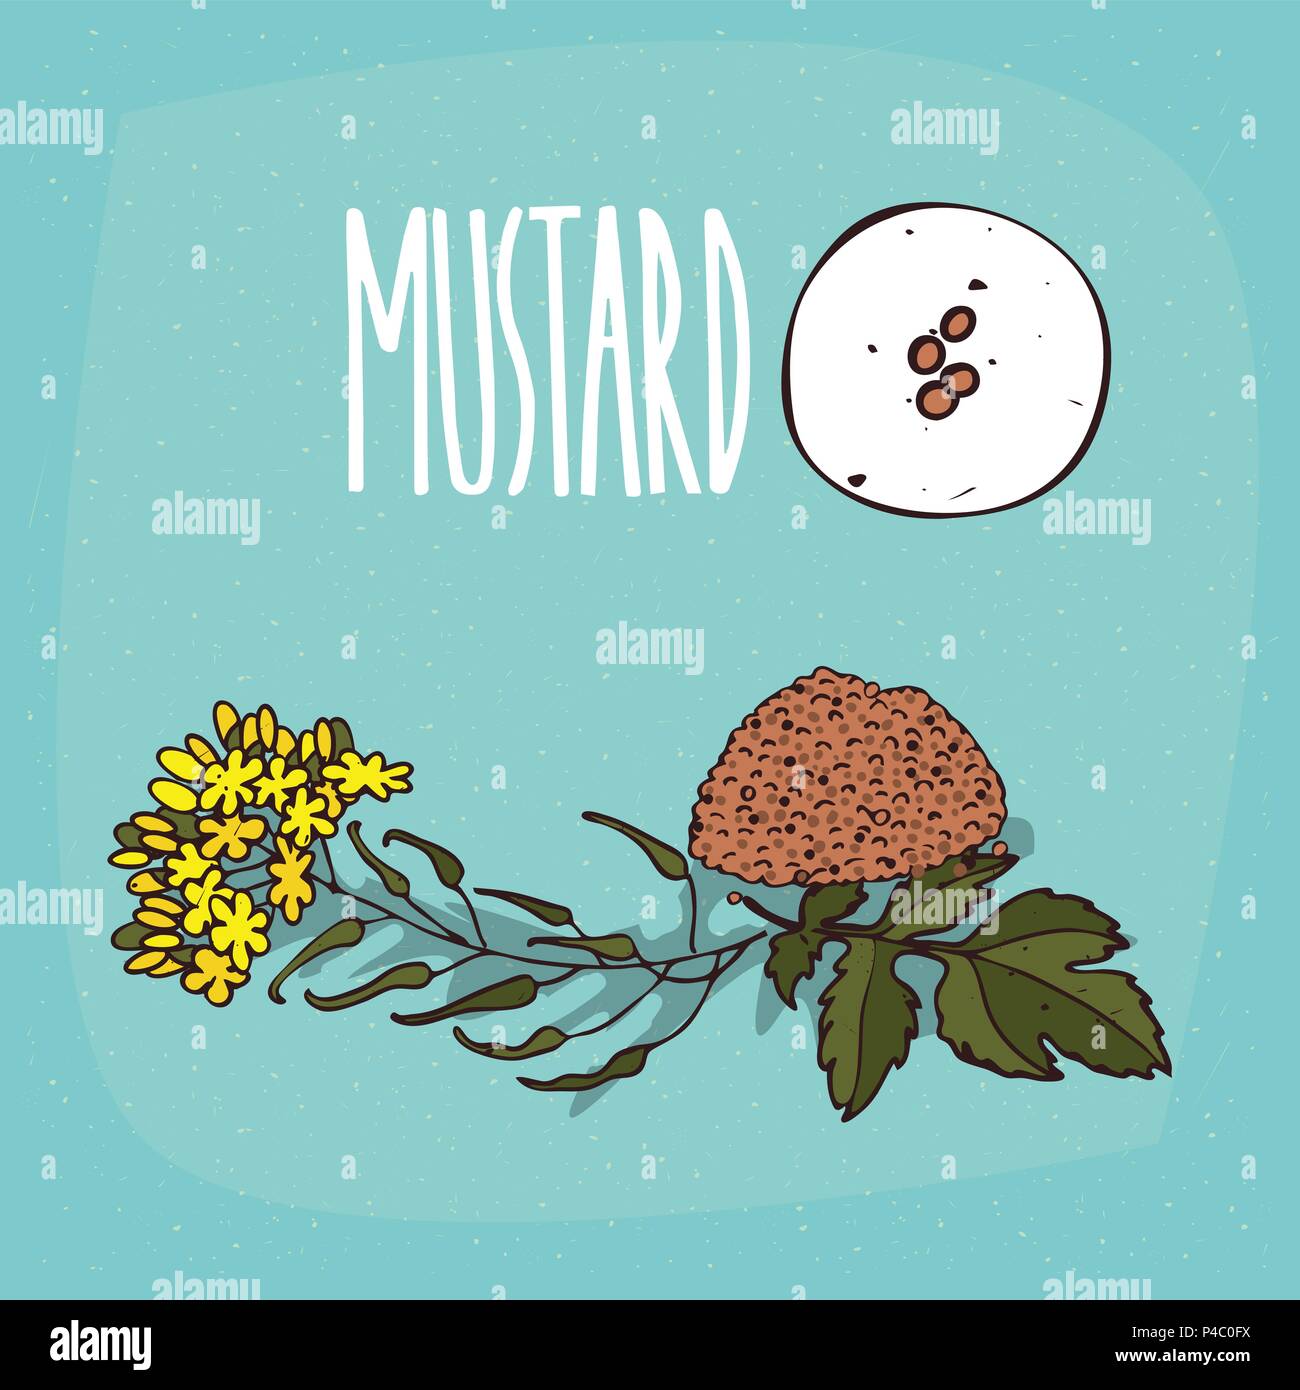 Ensemble de plantes isolées graines de moutarde herbe avec fleurs, feuilles, simple icône ronde de la moutarde sur fond blanc, lettrage inscription Mustard Illustration de Vecteur